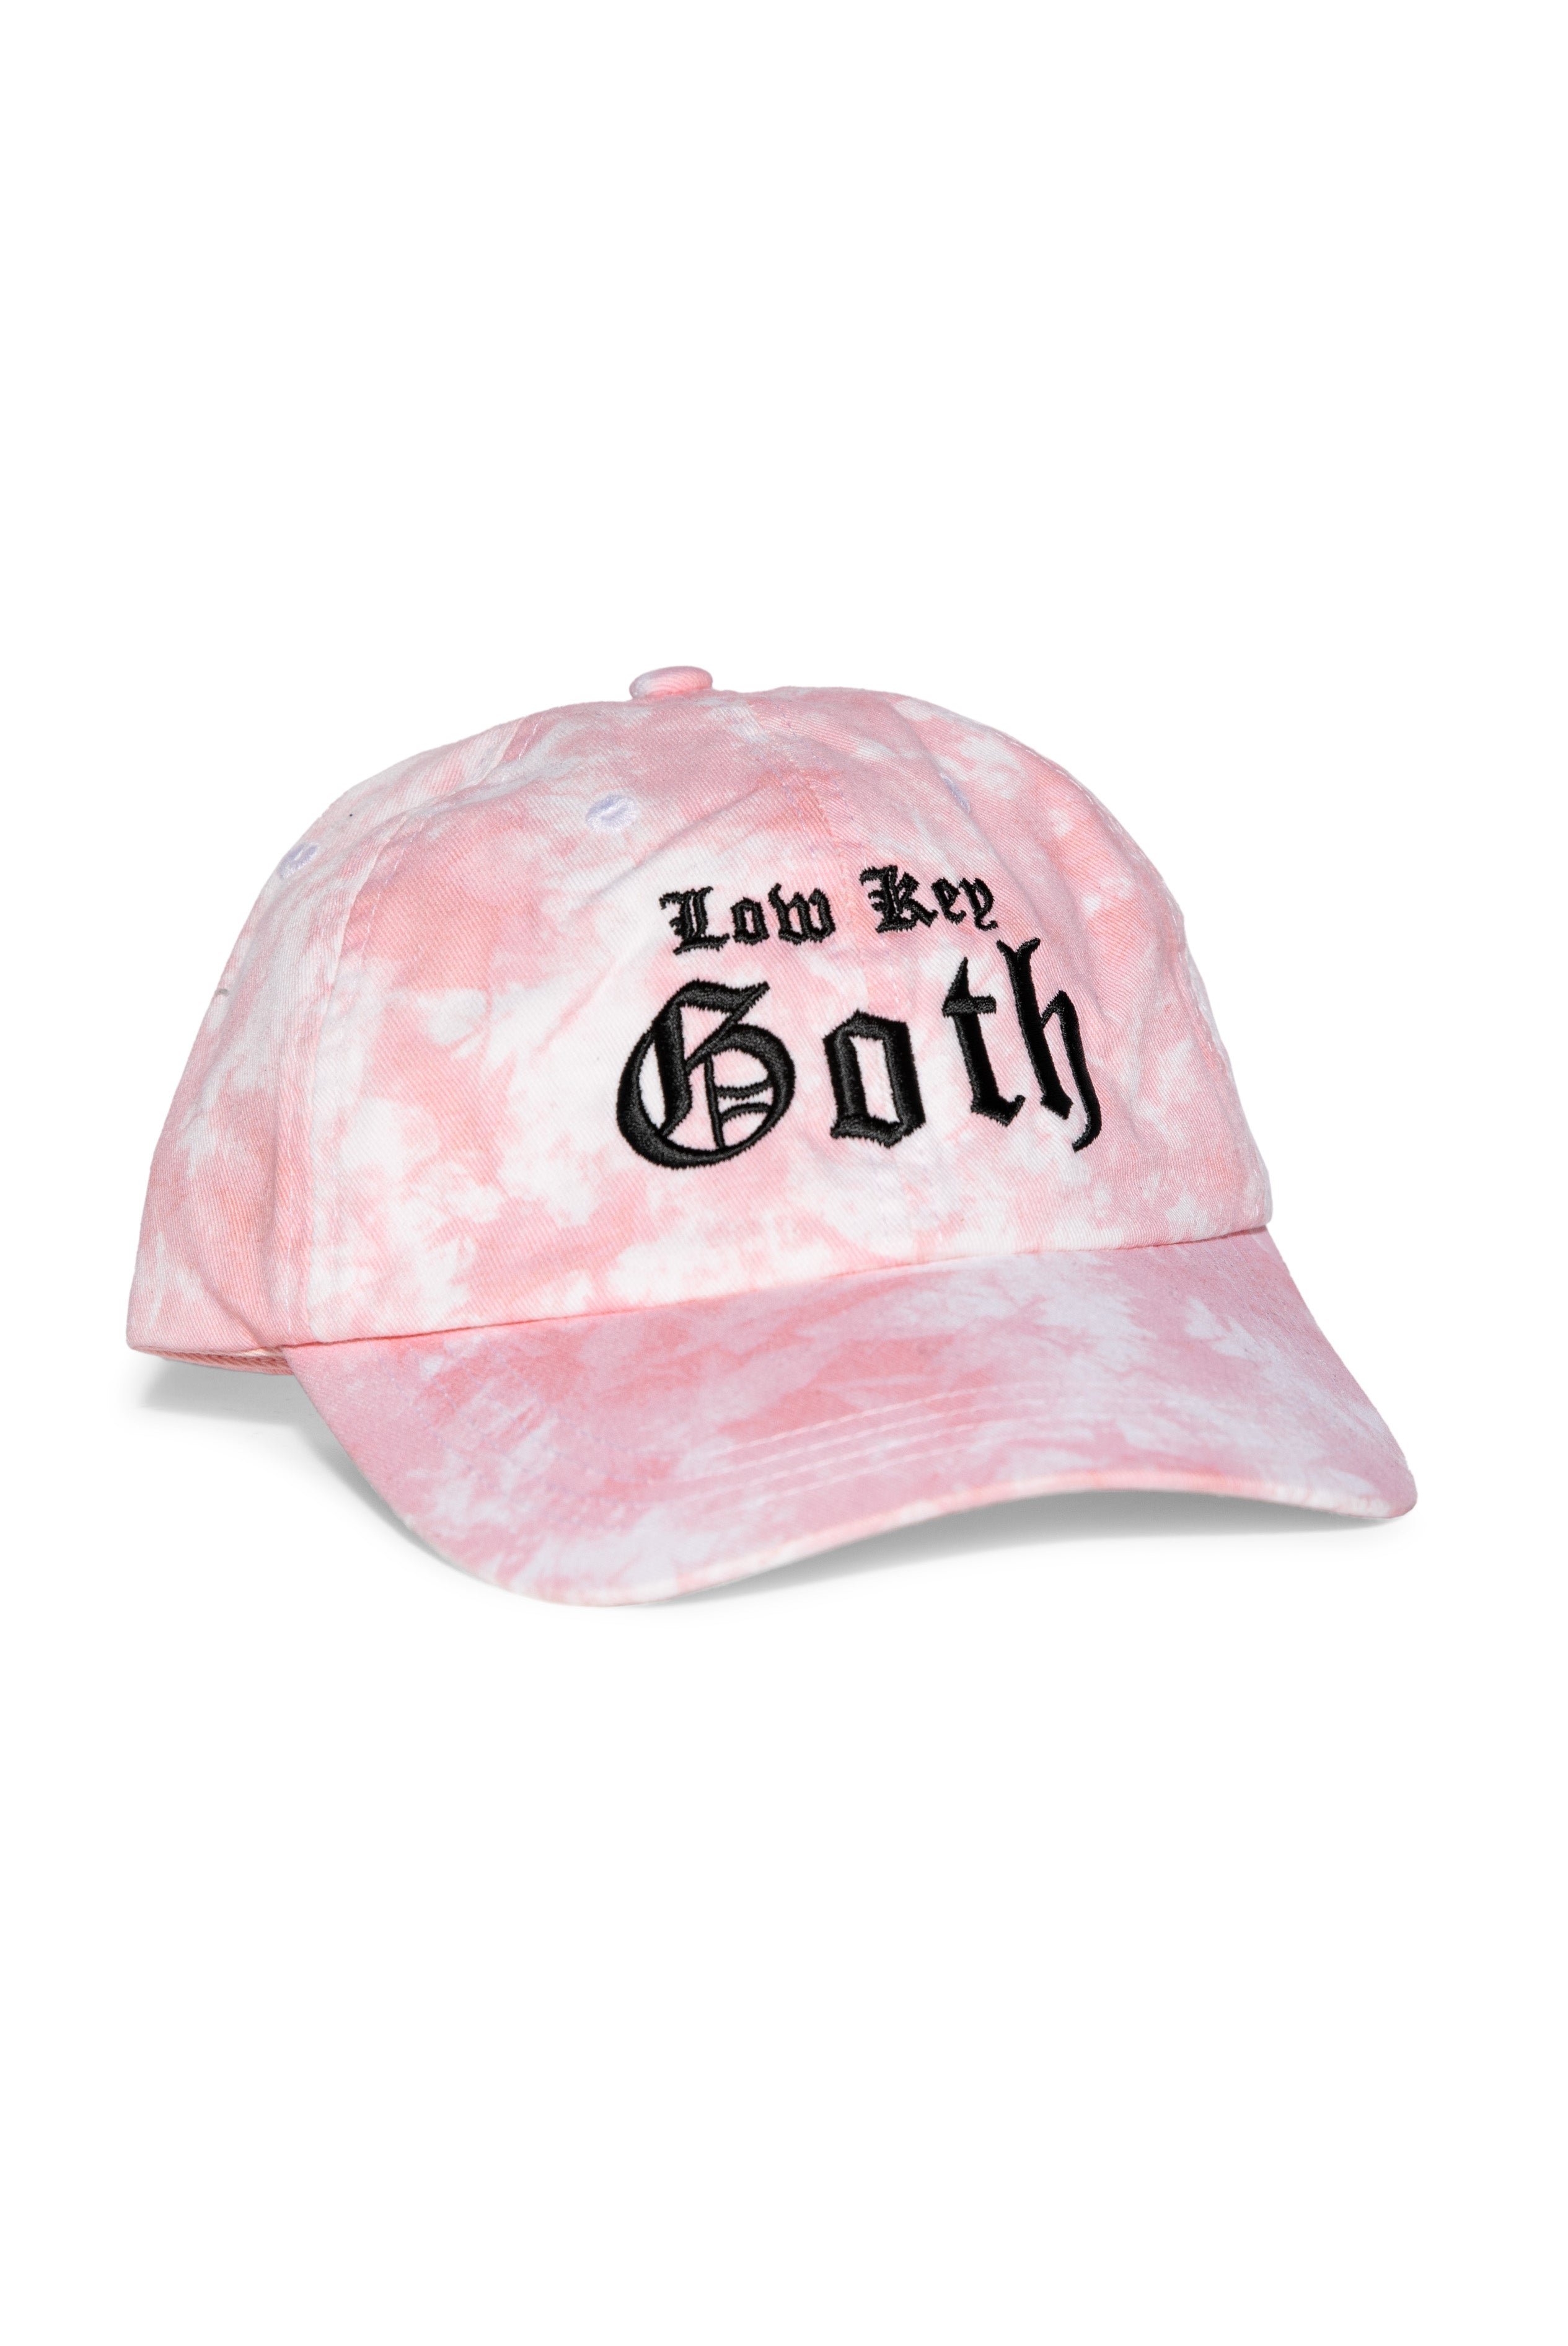 Low Key Goth - Tie Dye Hat – Blackcraft Cult